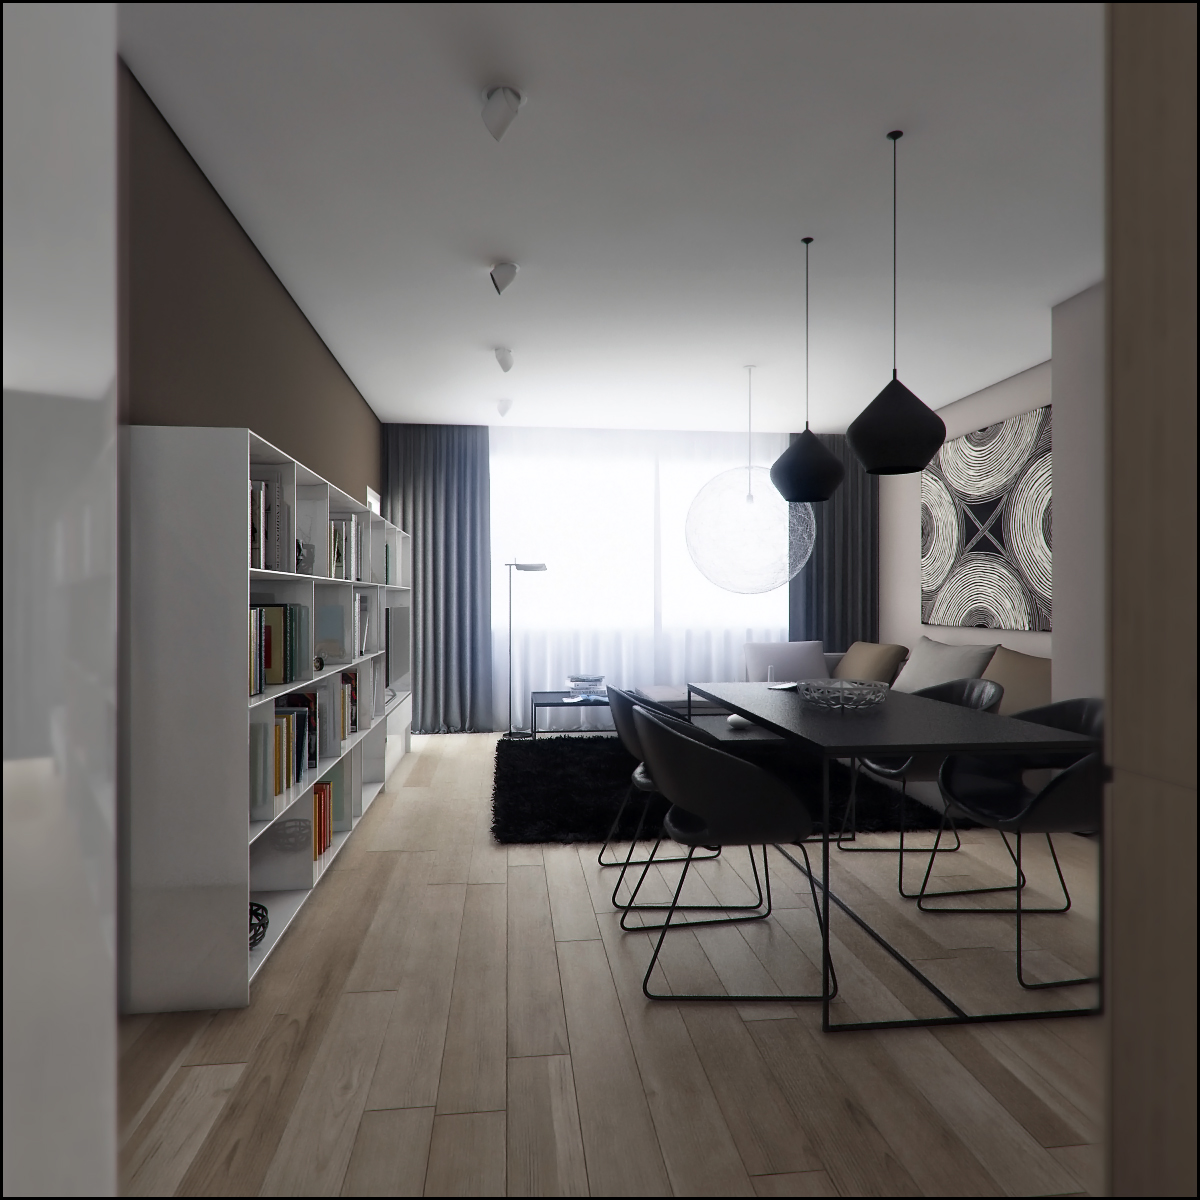 Interior design apartmen living room